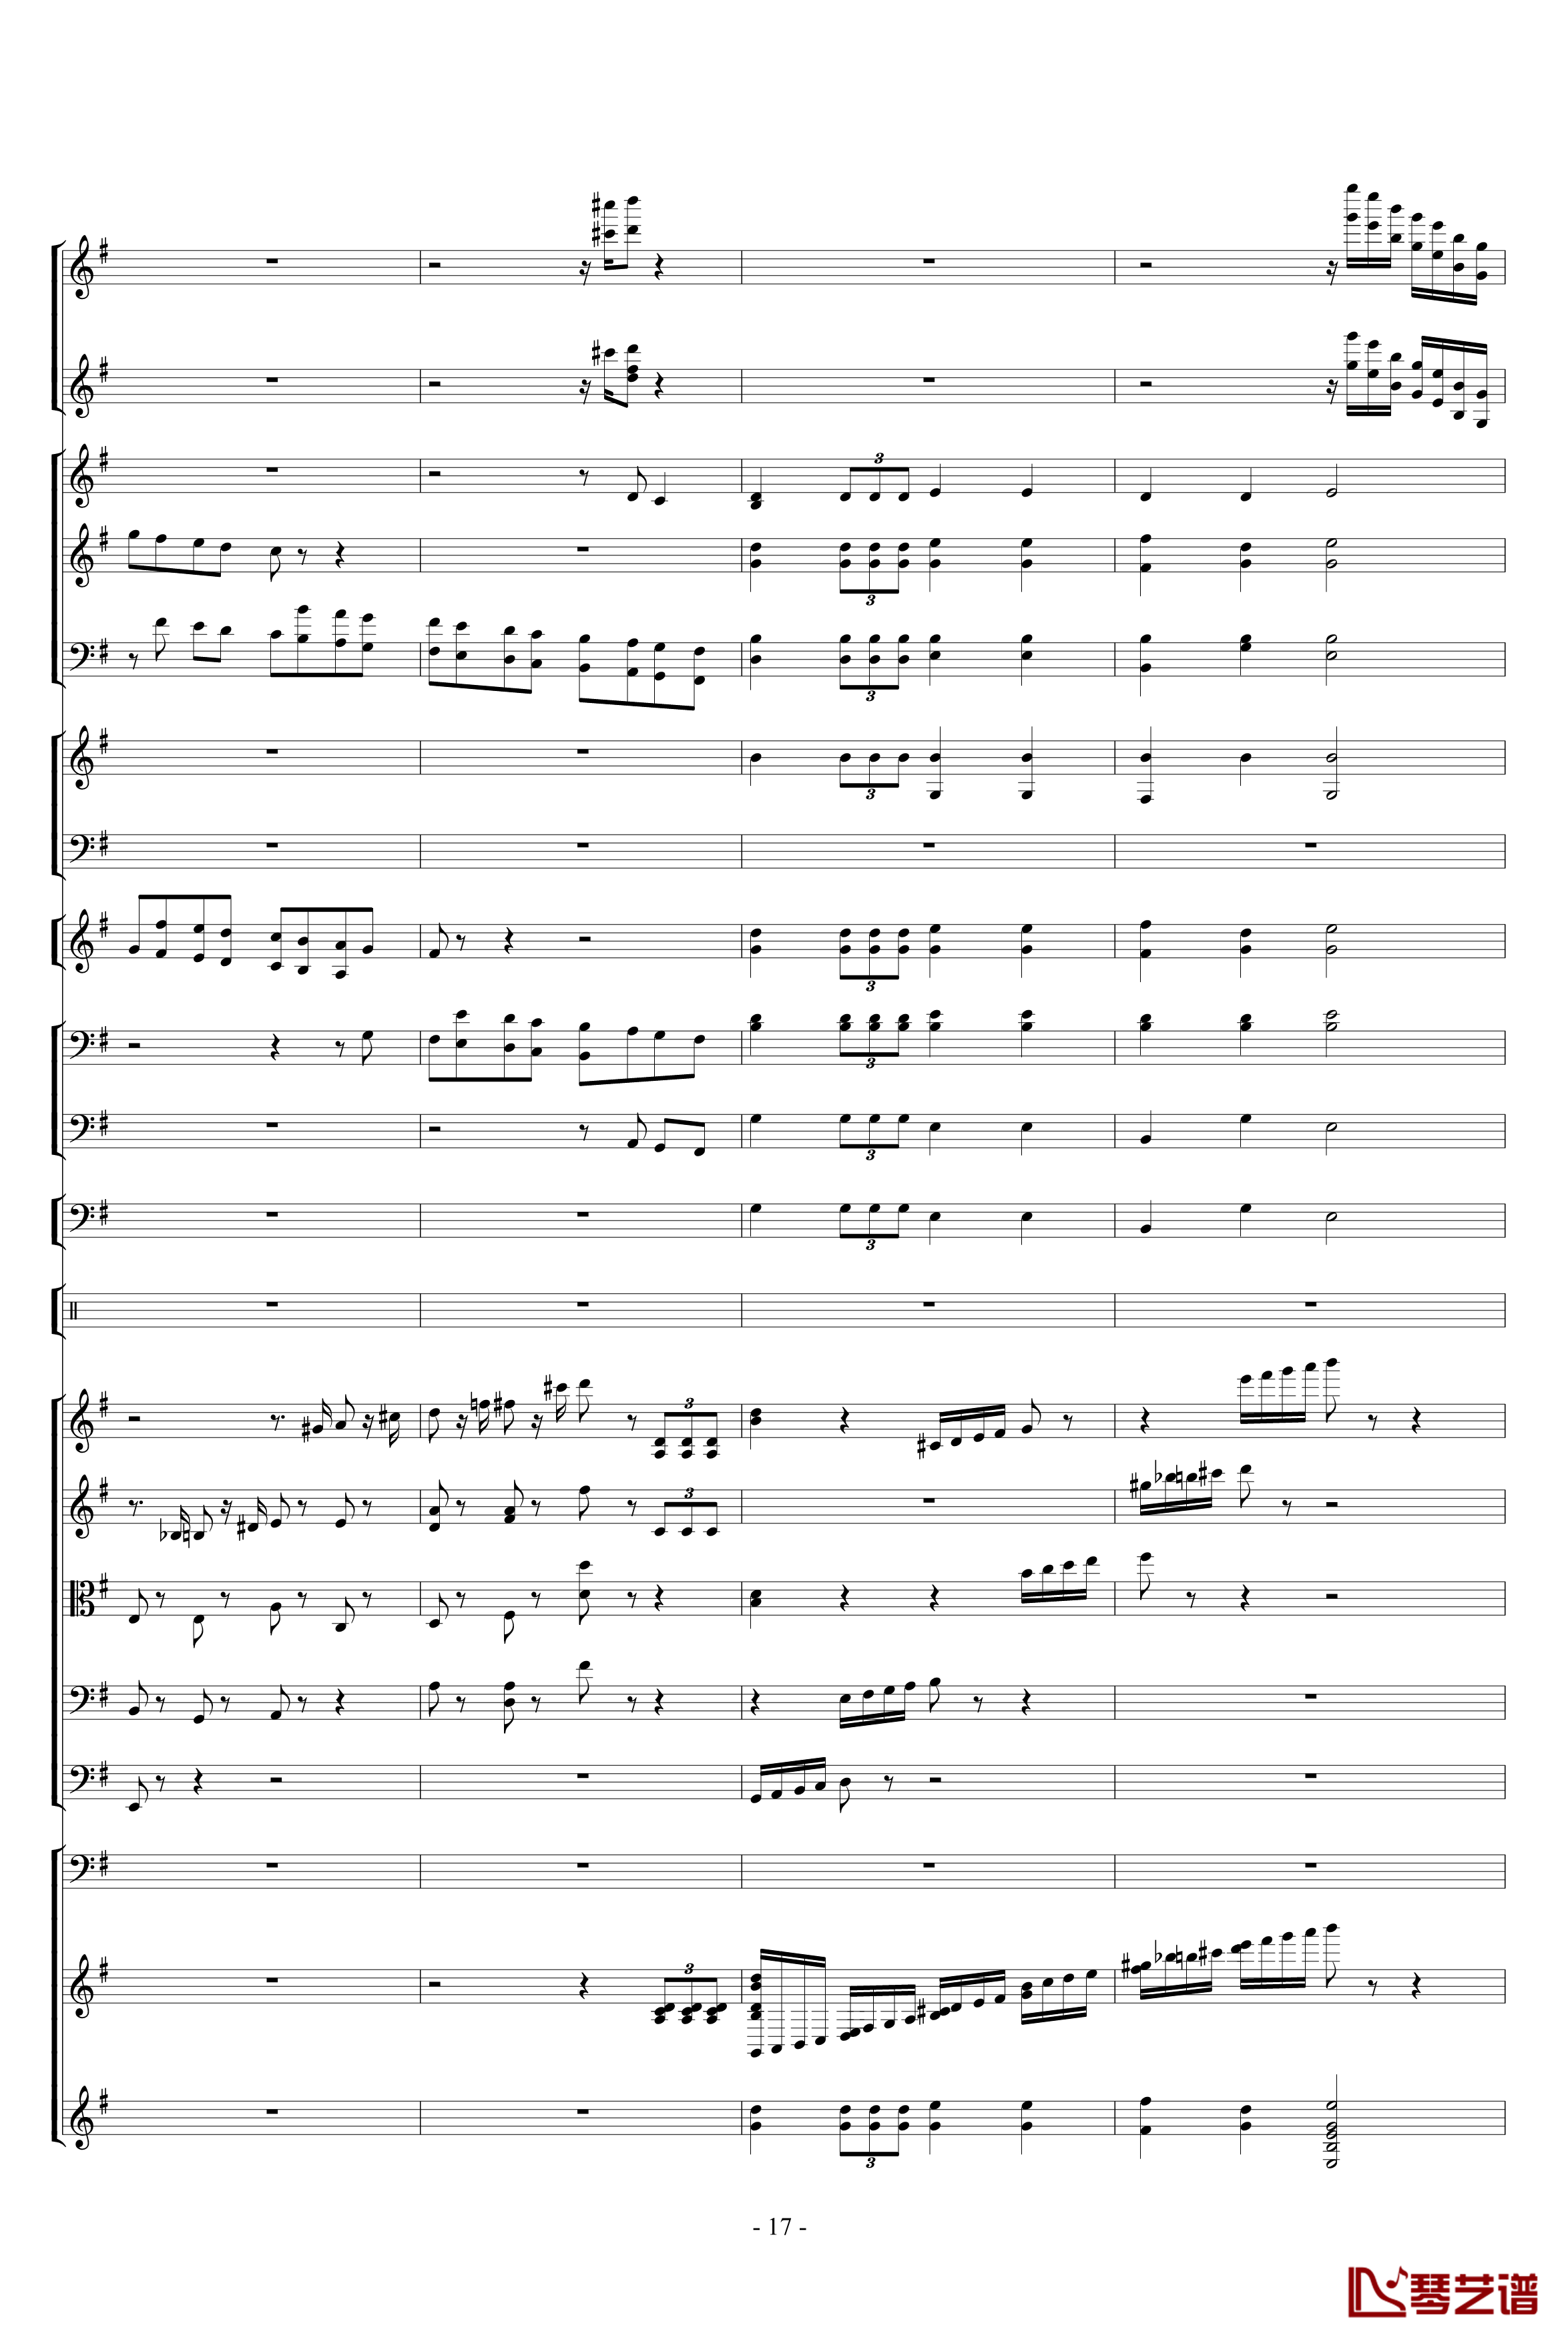 胡桃夹子组曲之进行曲钢琴谱-柴科夫斯基-Peter Ilyich Tchaikovsky17